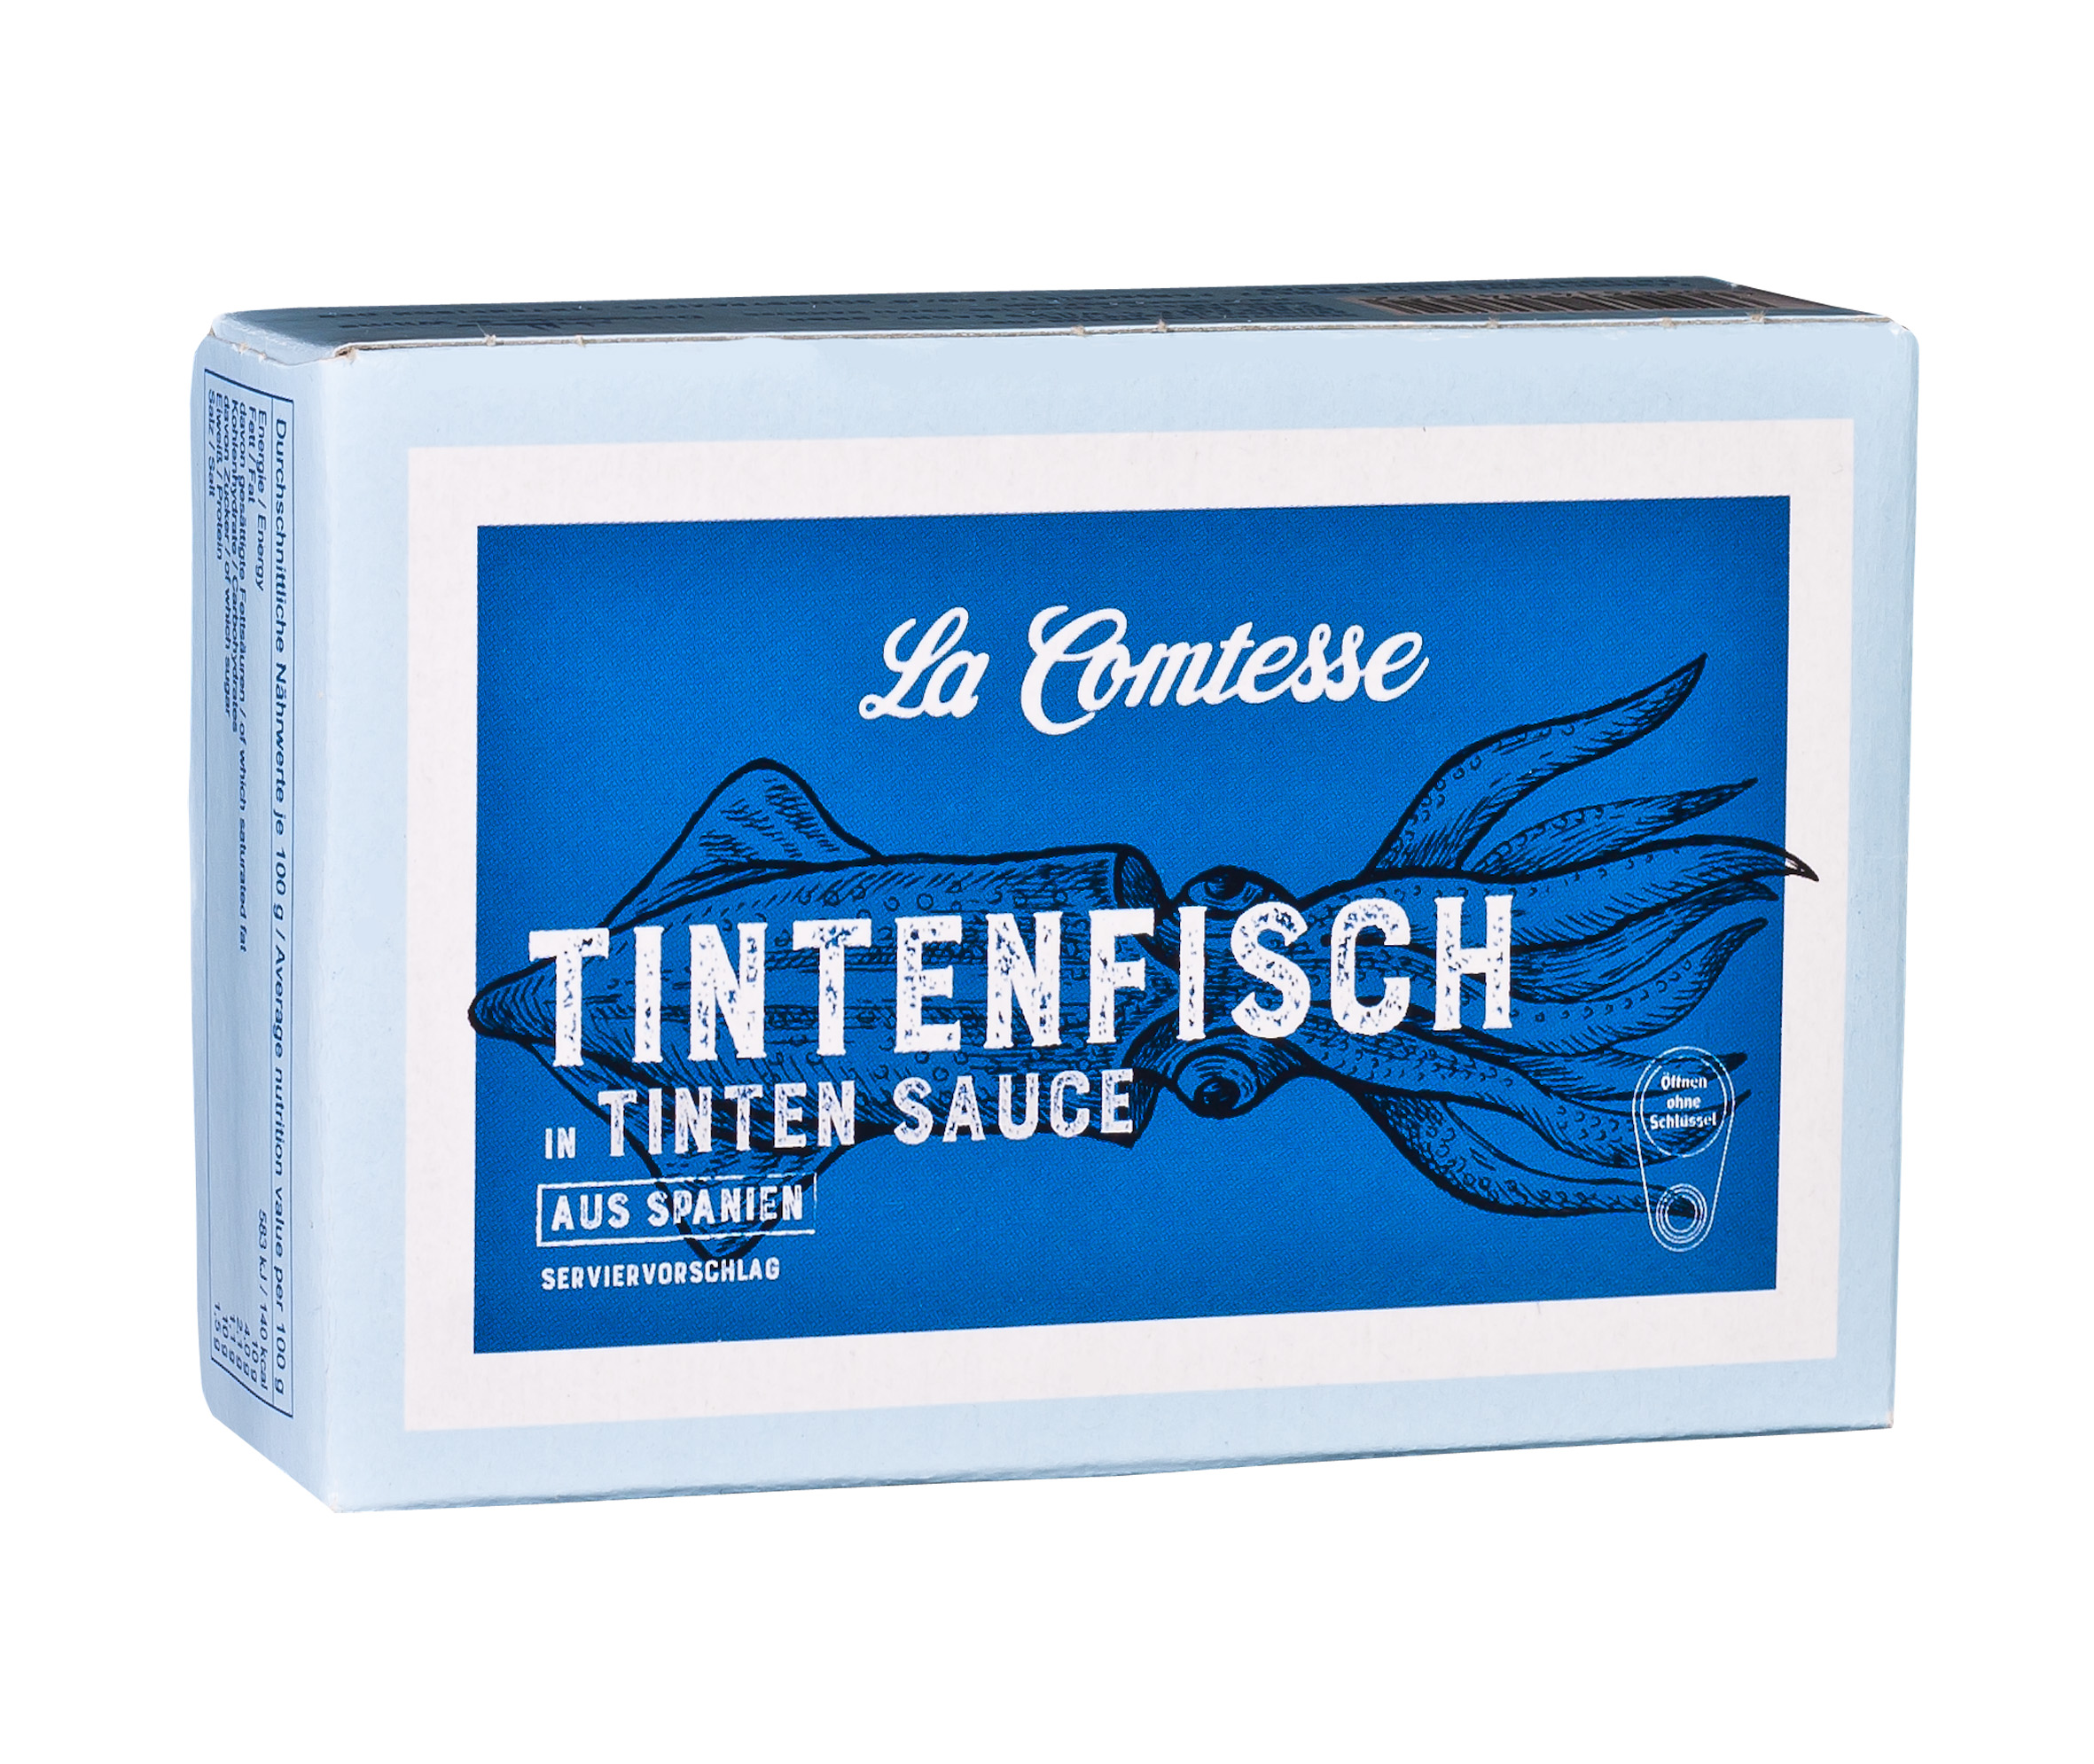  Tintenfisch in Tinten Sauce